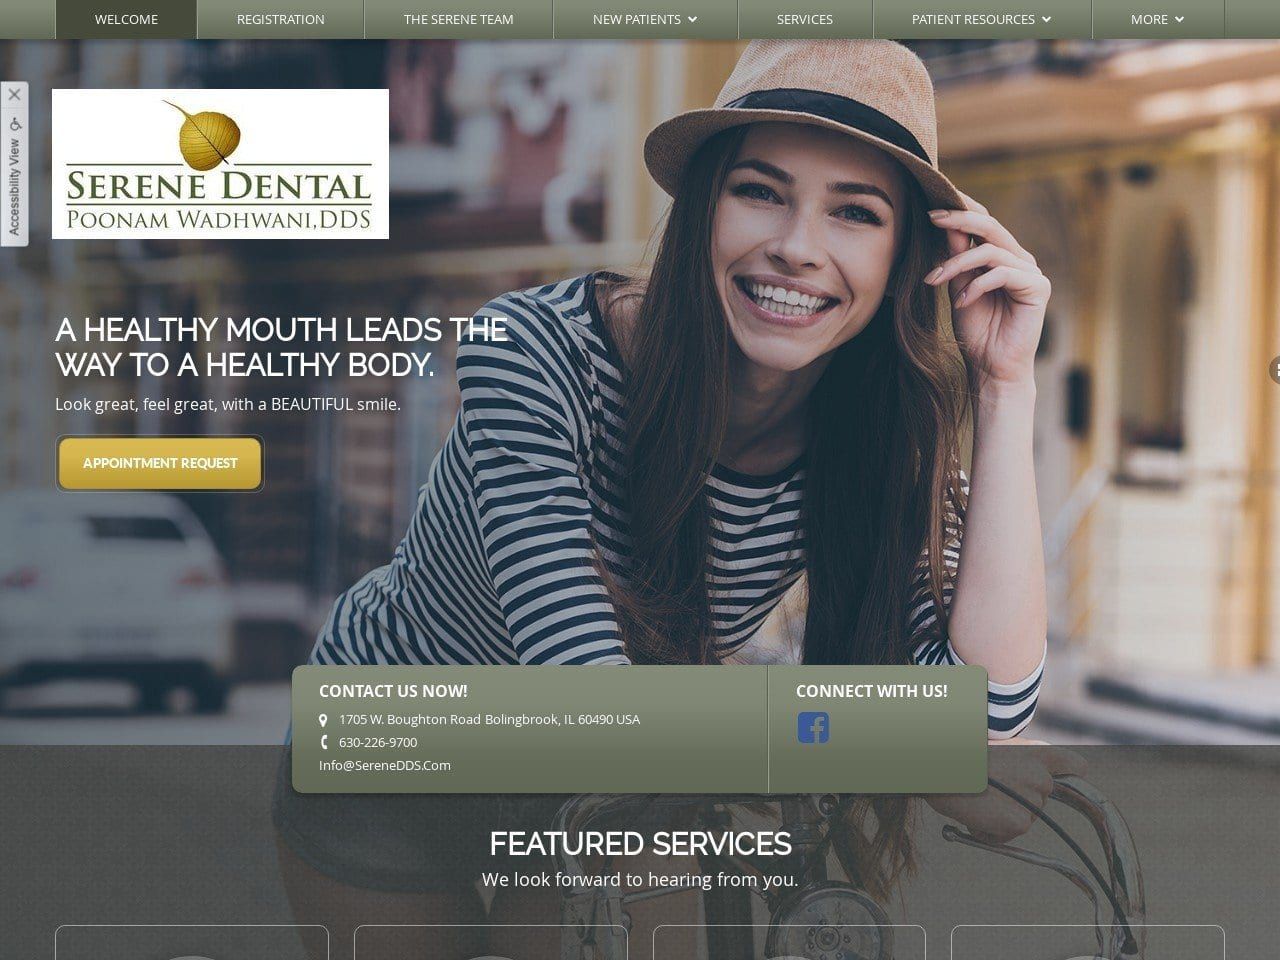 Serene Dental Website Screenshot from serenedds.com